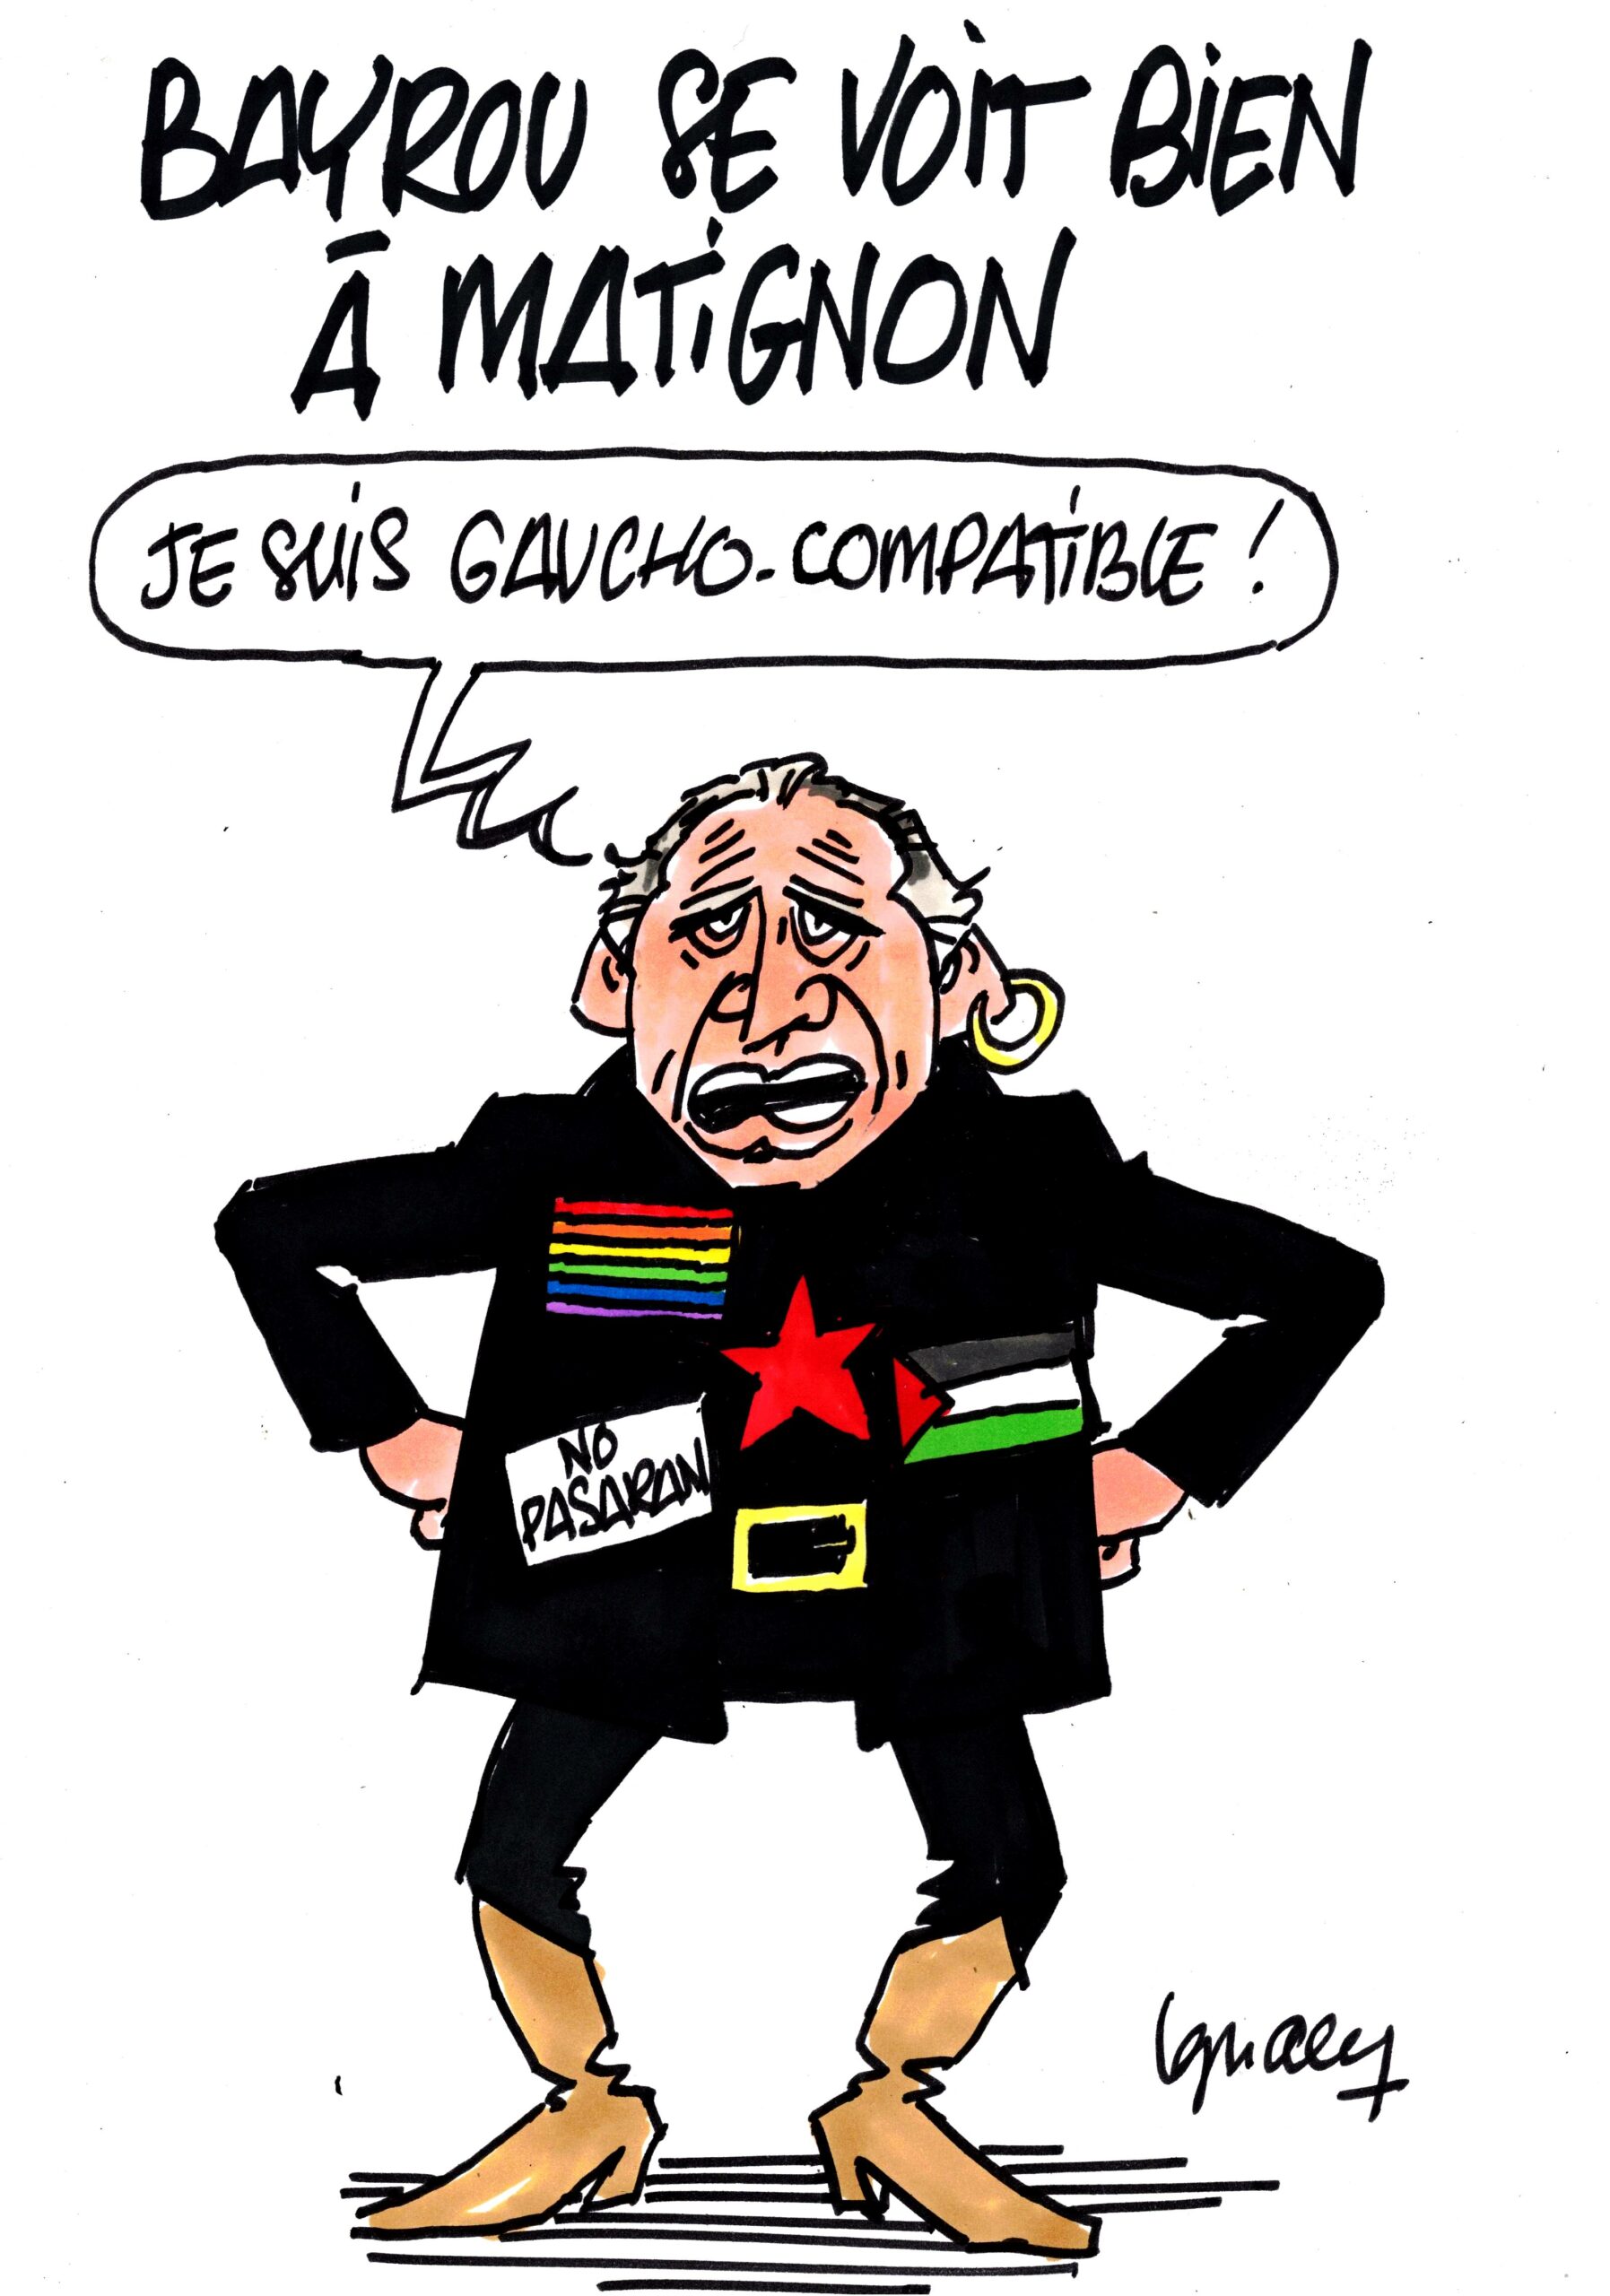 Ignace - Bayrou se voit bien à Matignon